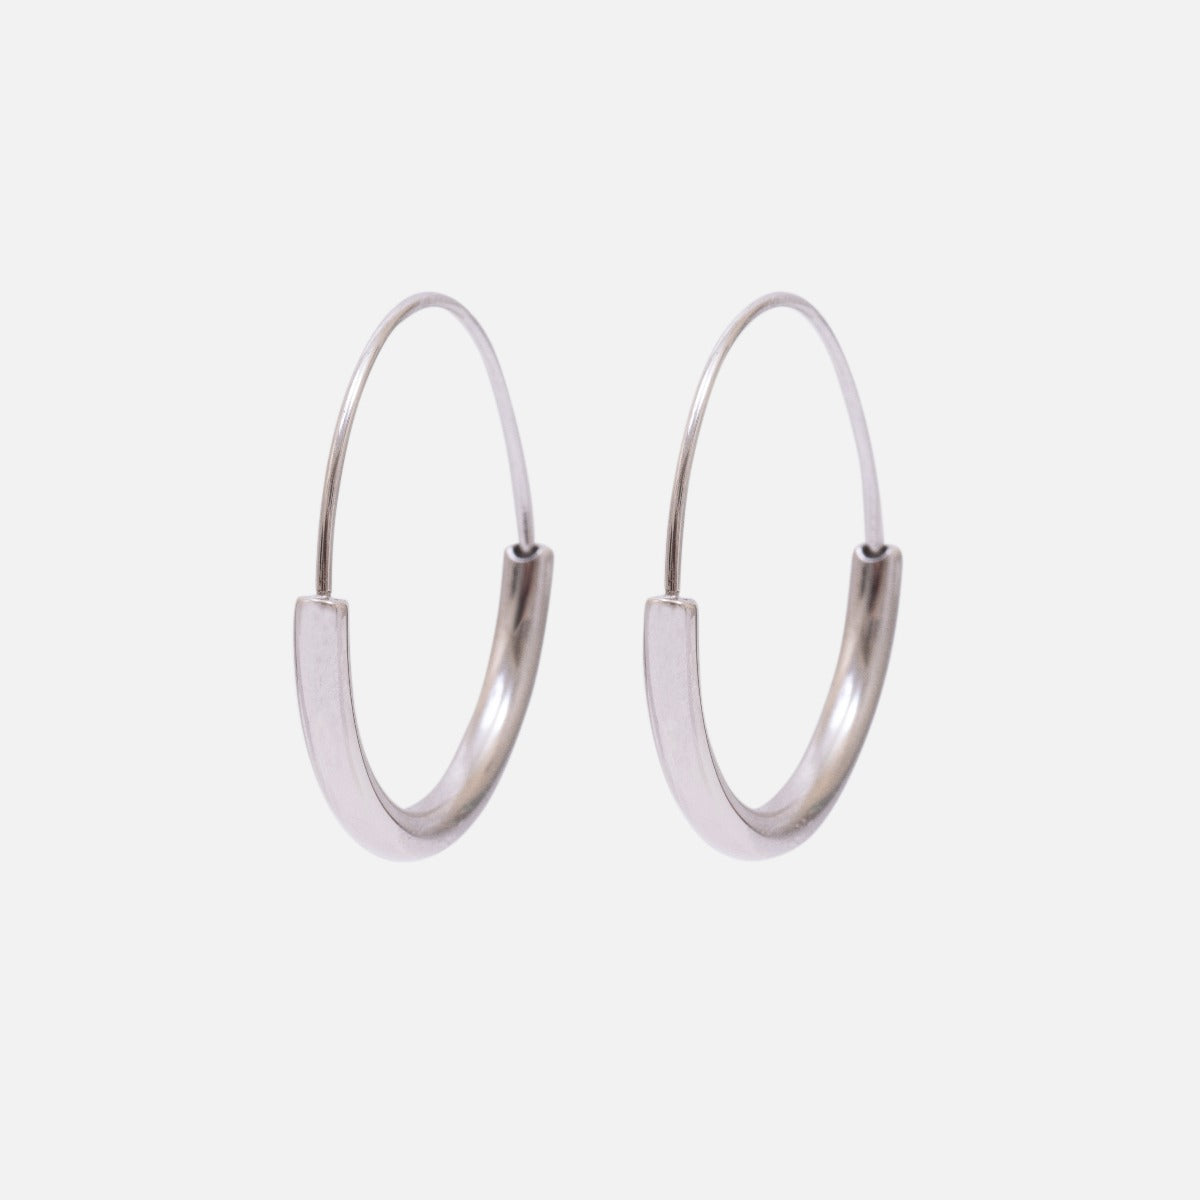 Boucles d’oreilles anneaux argent avec large demi-lune en acier inoxydable